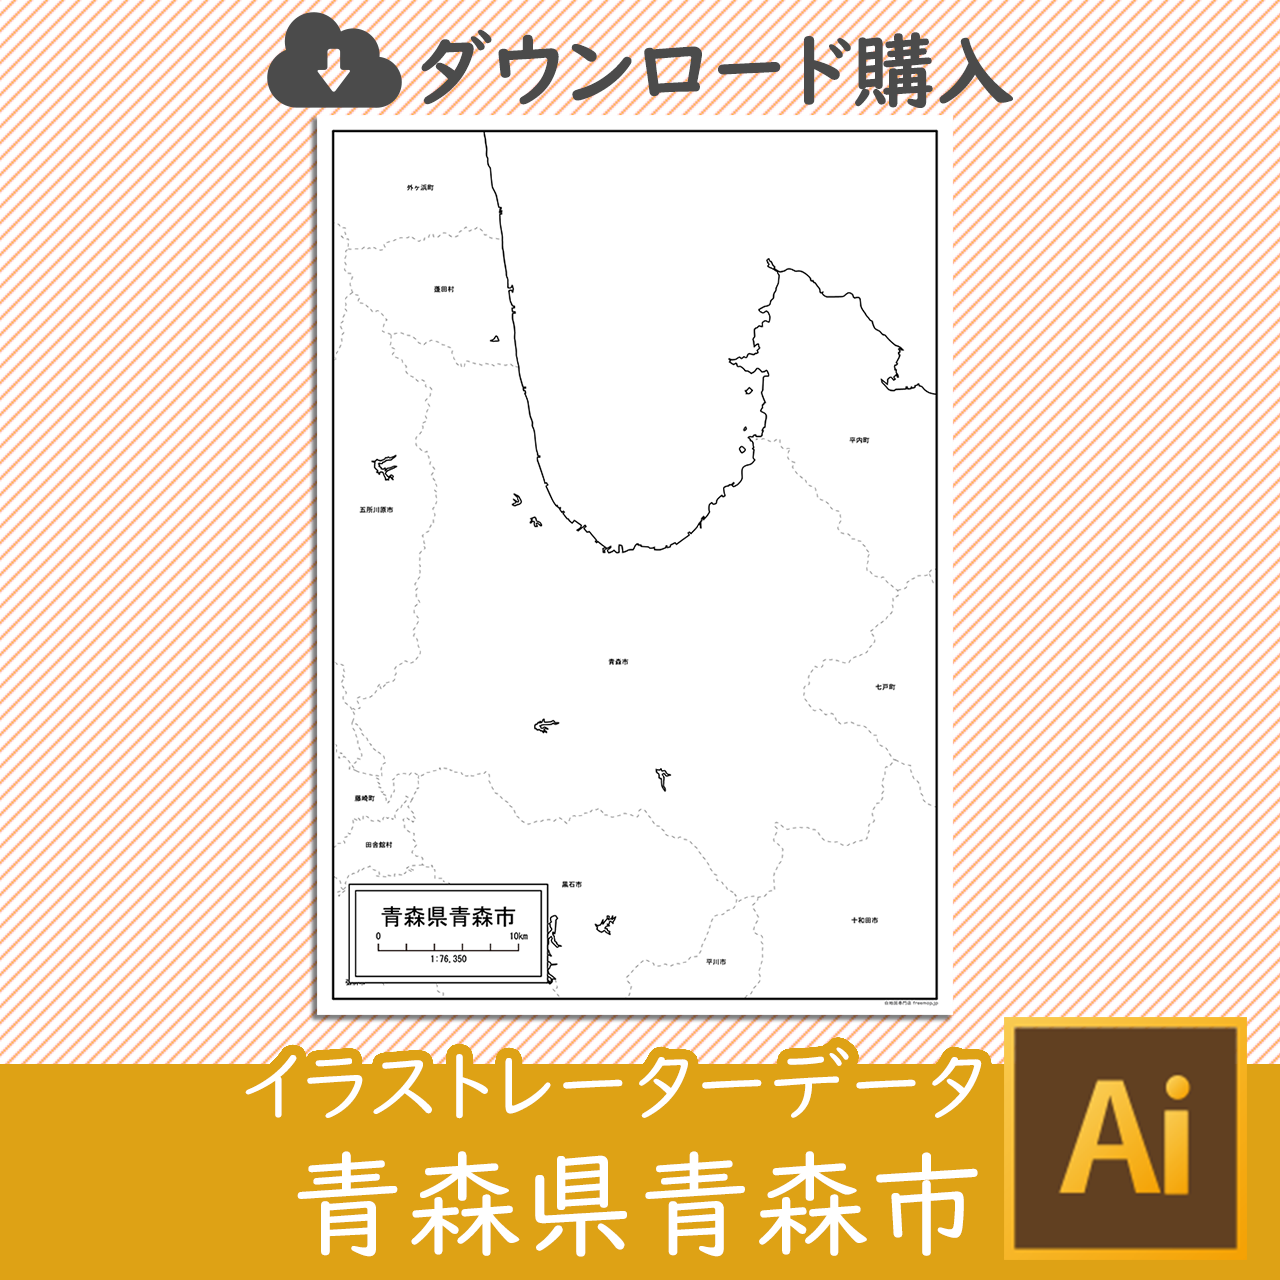 青森市のaiデータのサムネイル画像